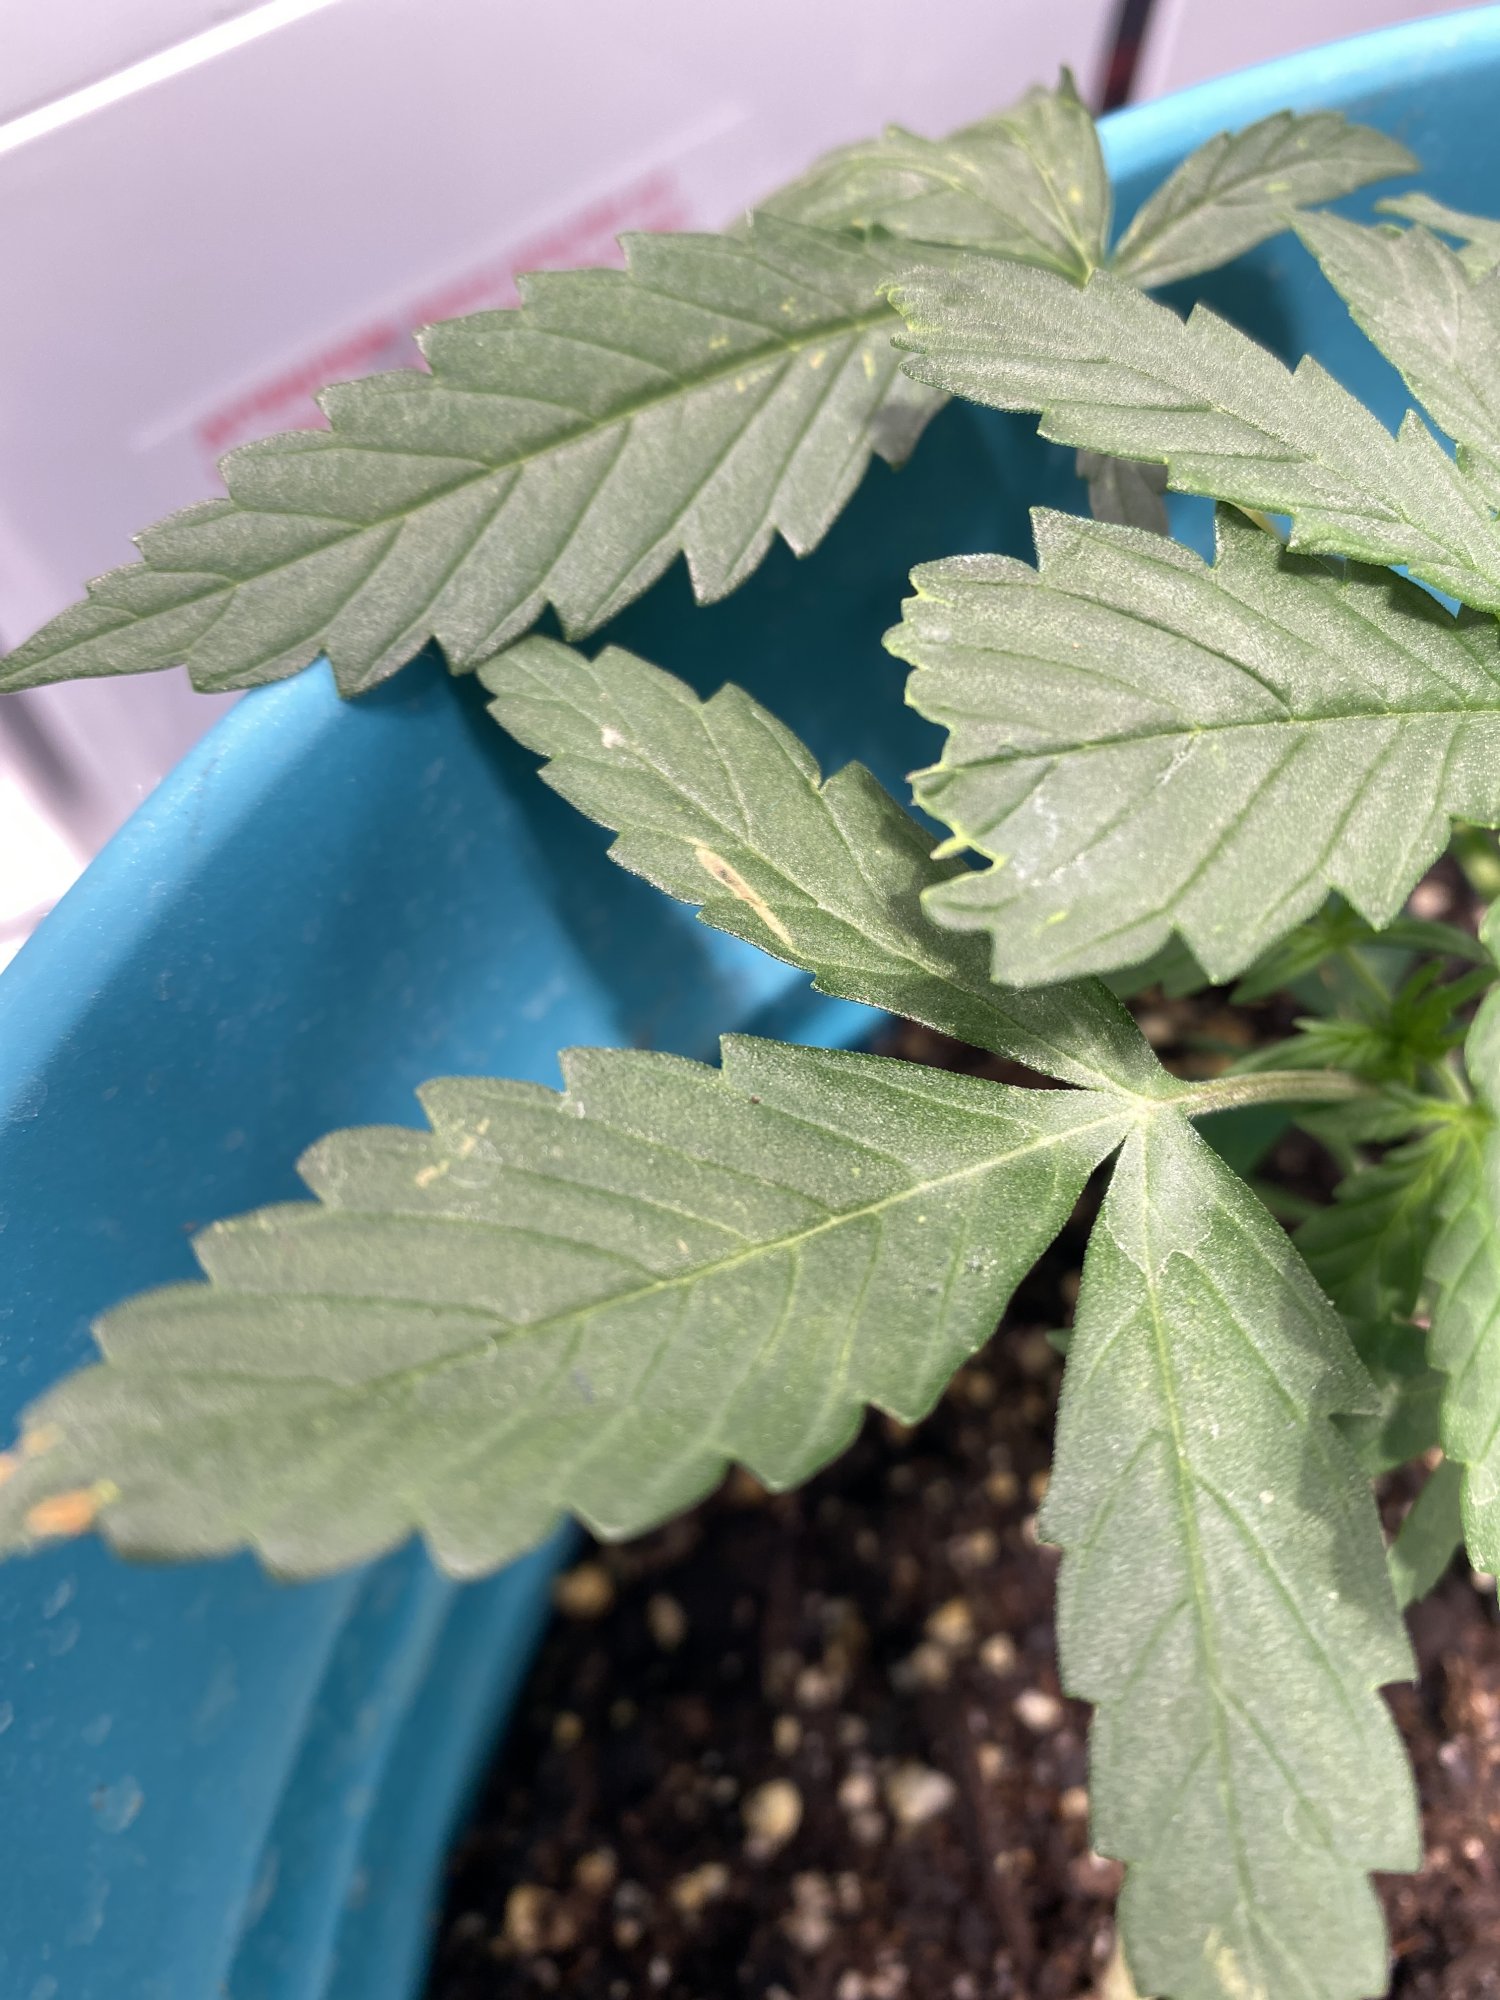 Weird spots on my lsd plant plz help